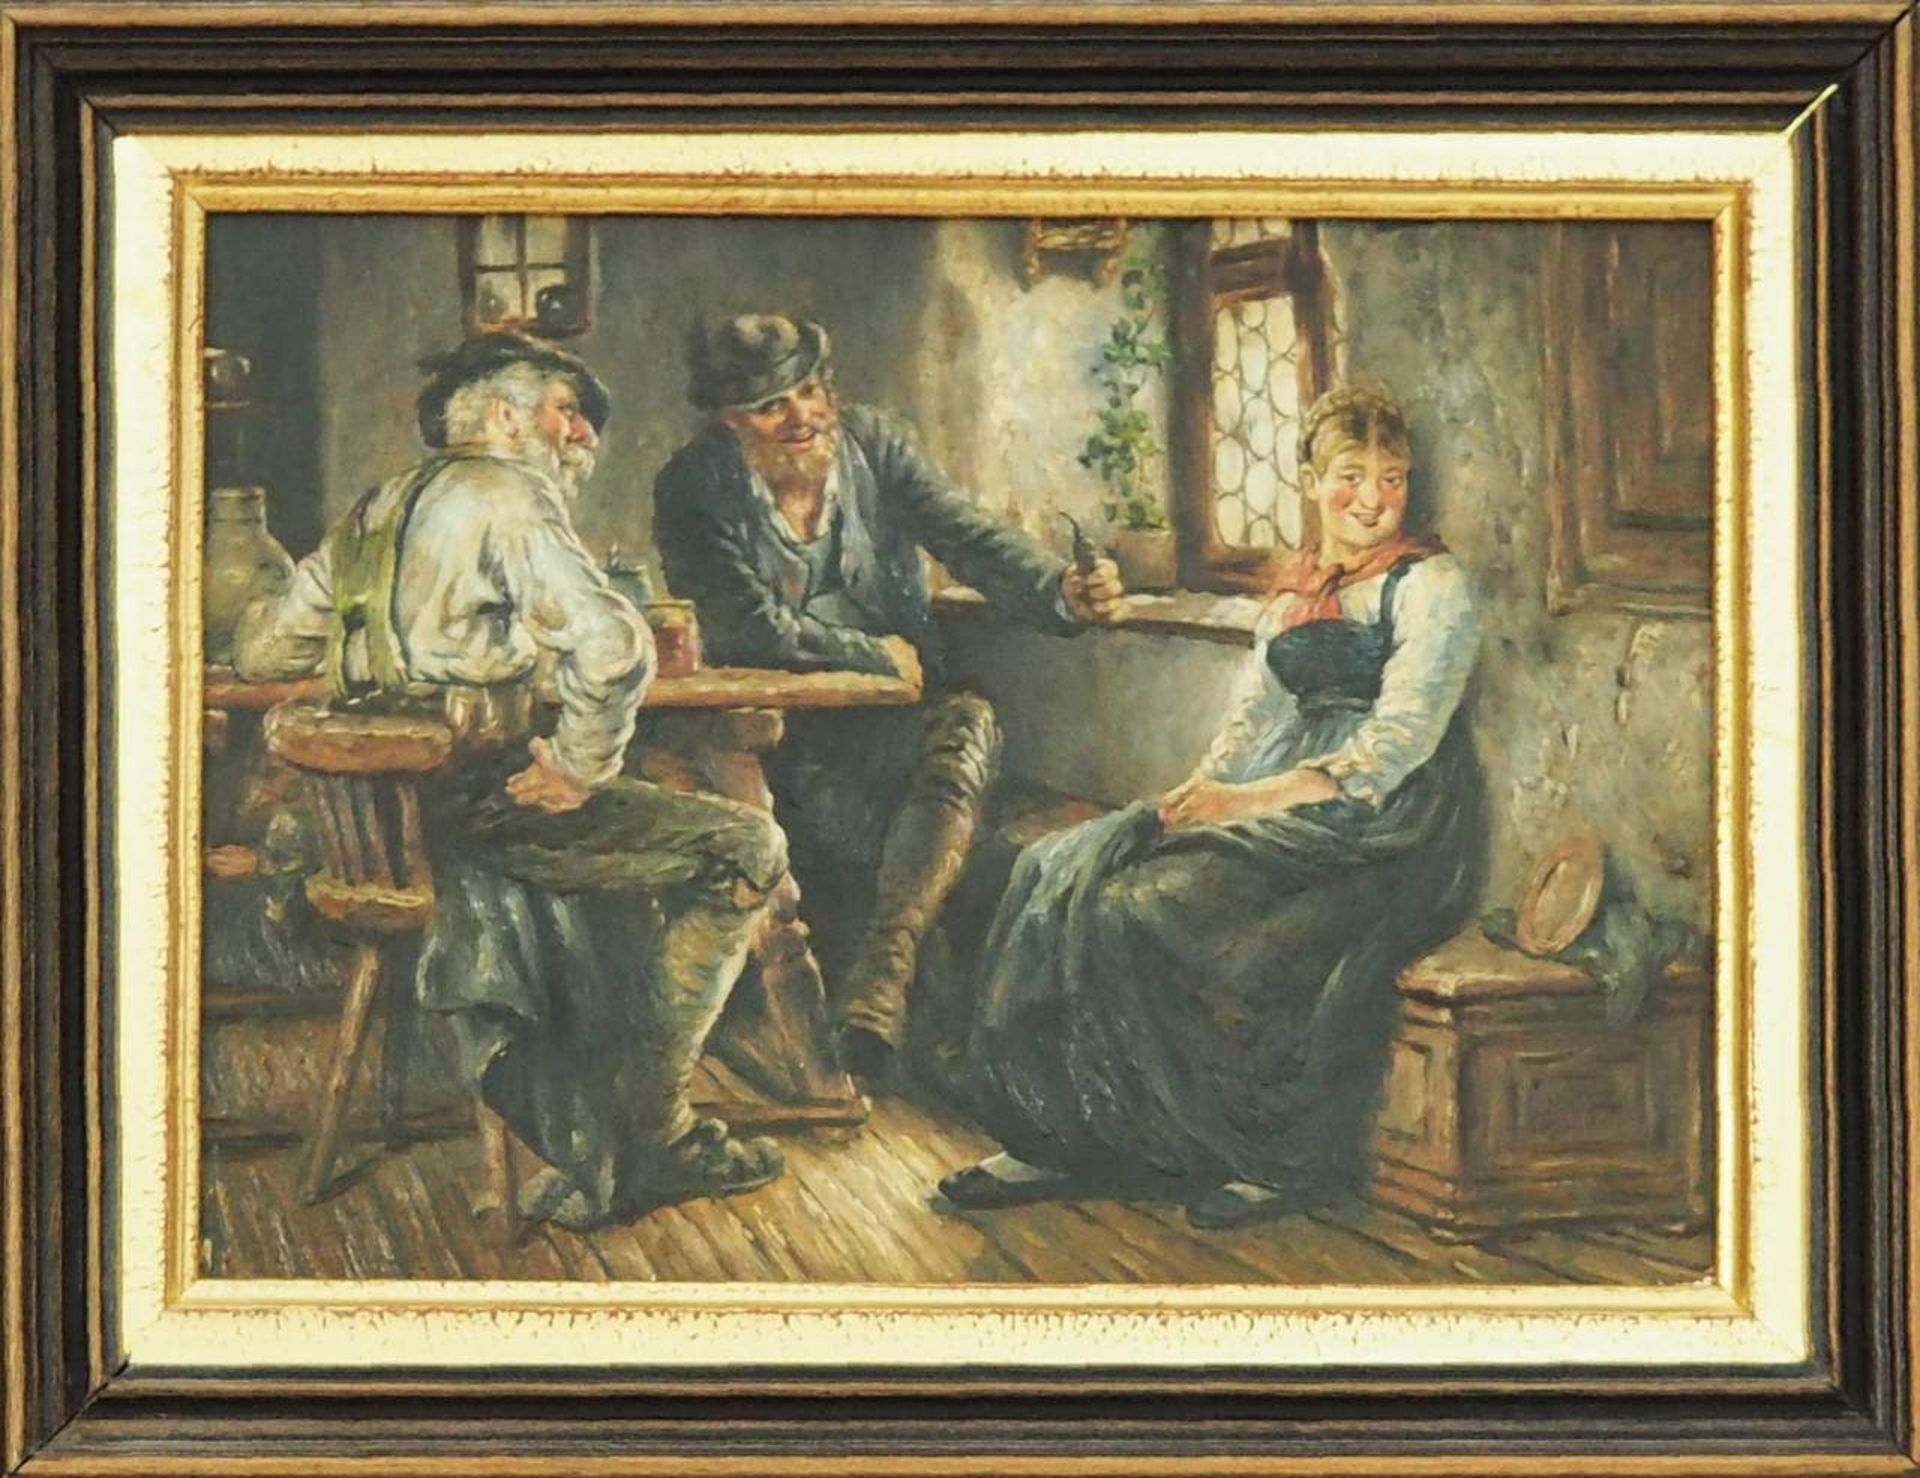 Unbekannter Meister, Museumsreplik, "In der Wirtsstube", nach Hugo Kauffmann 1844 - 1915. - Bild 2 aus 4